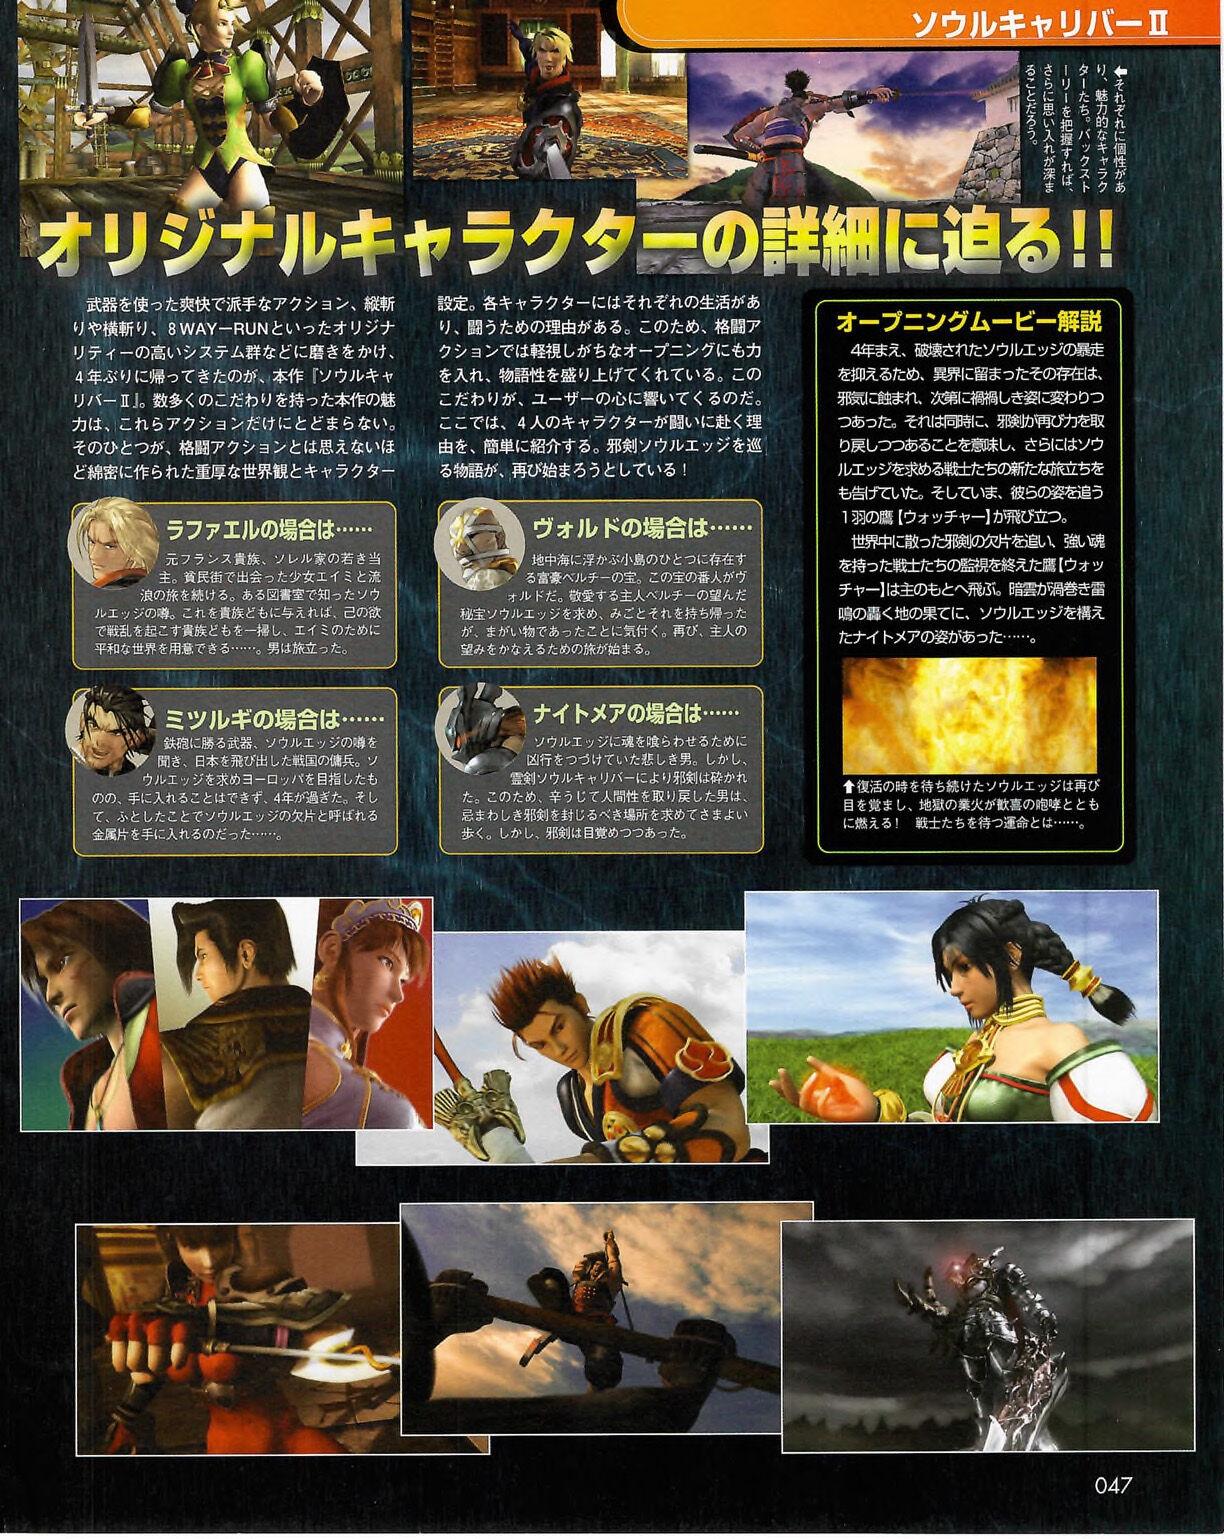 Famitsu_Xbox_2003-04_jp2 46